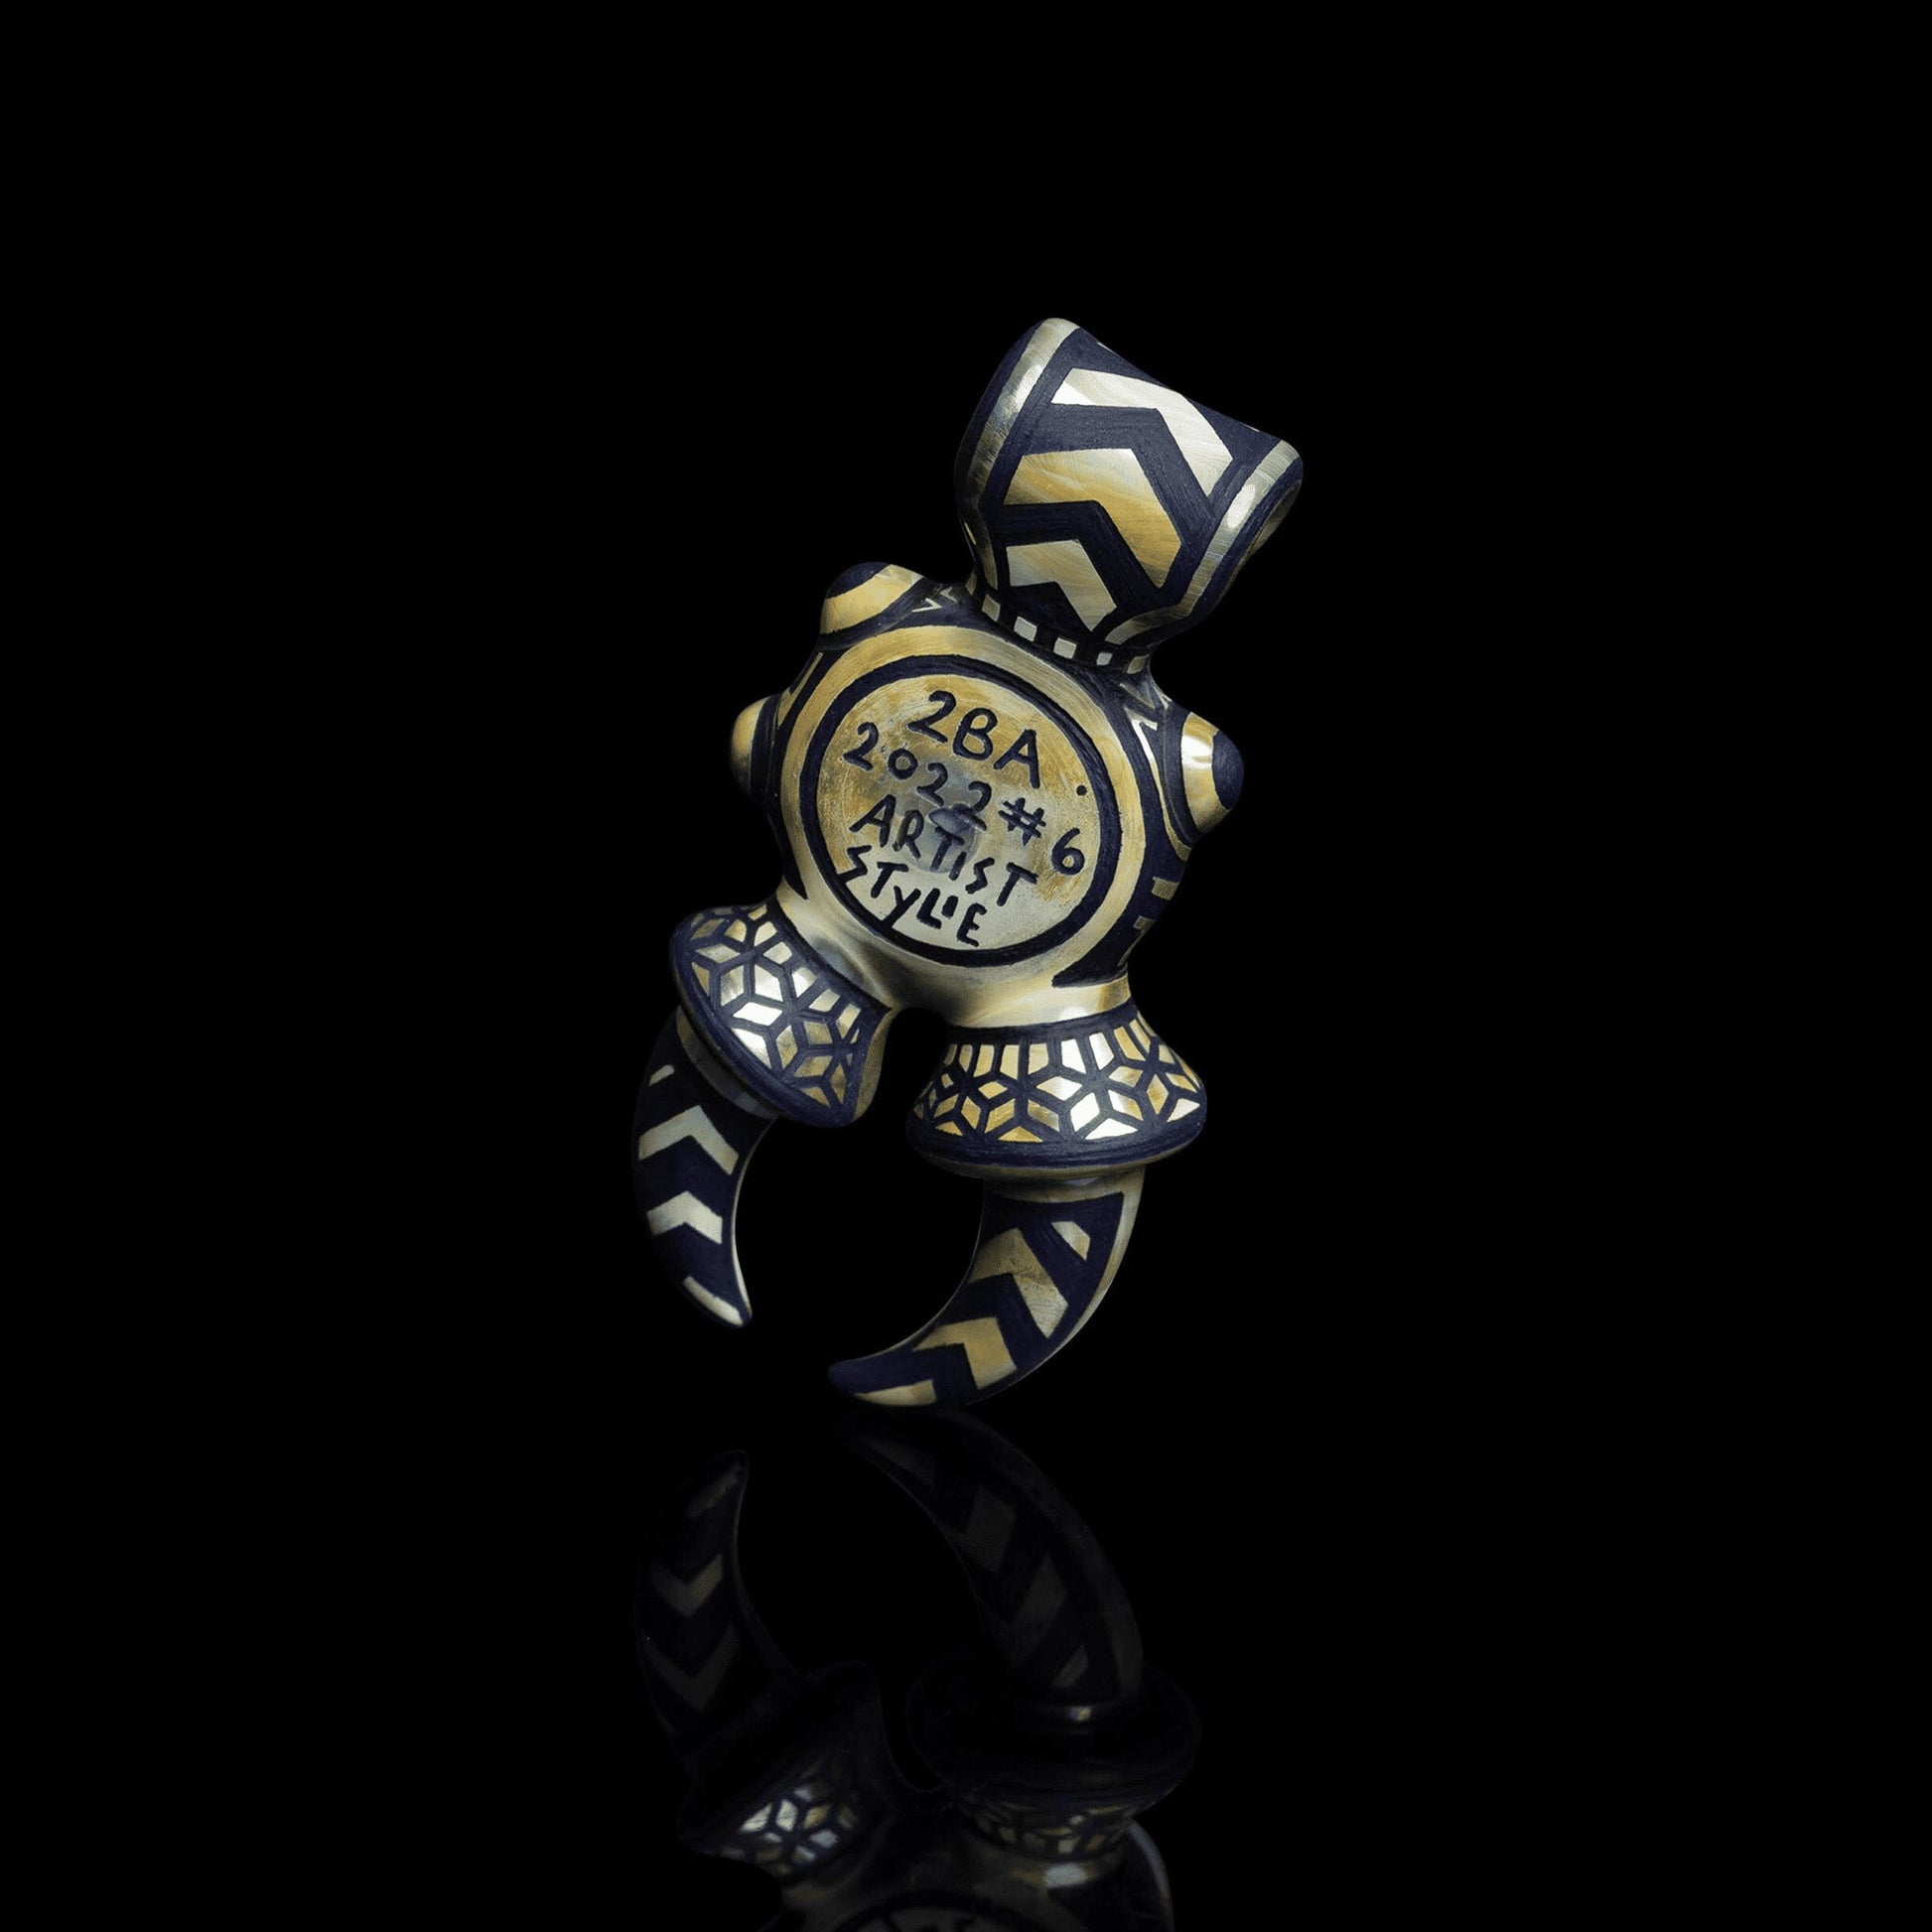 heady glass pendant - Full Warlock Pendant (B) by Alex Ubatuba x Artist Stylie (2BA x Stylie 2022 Release)